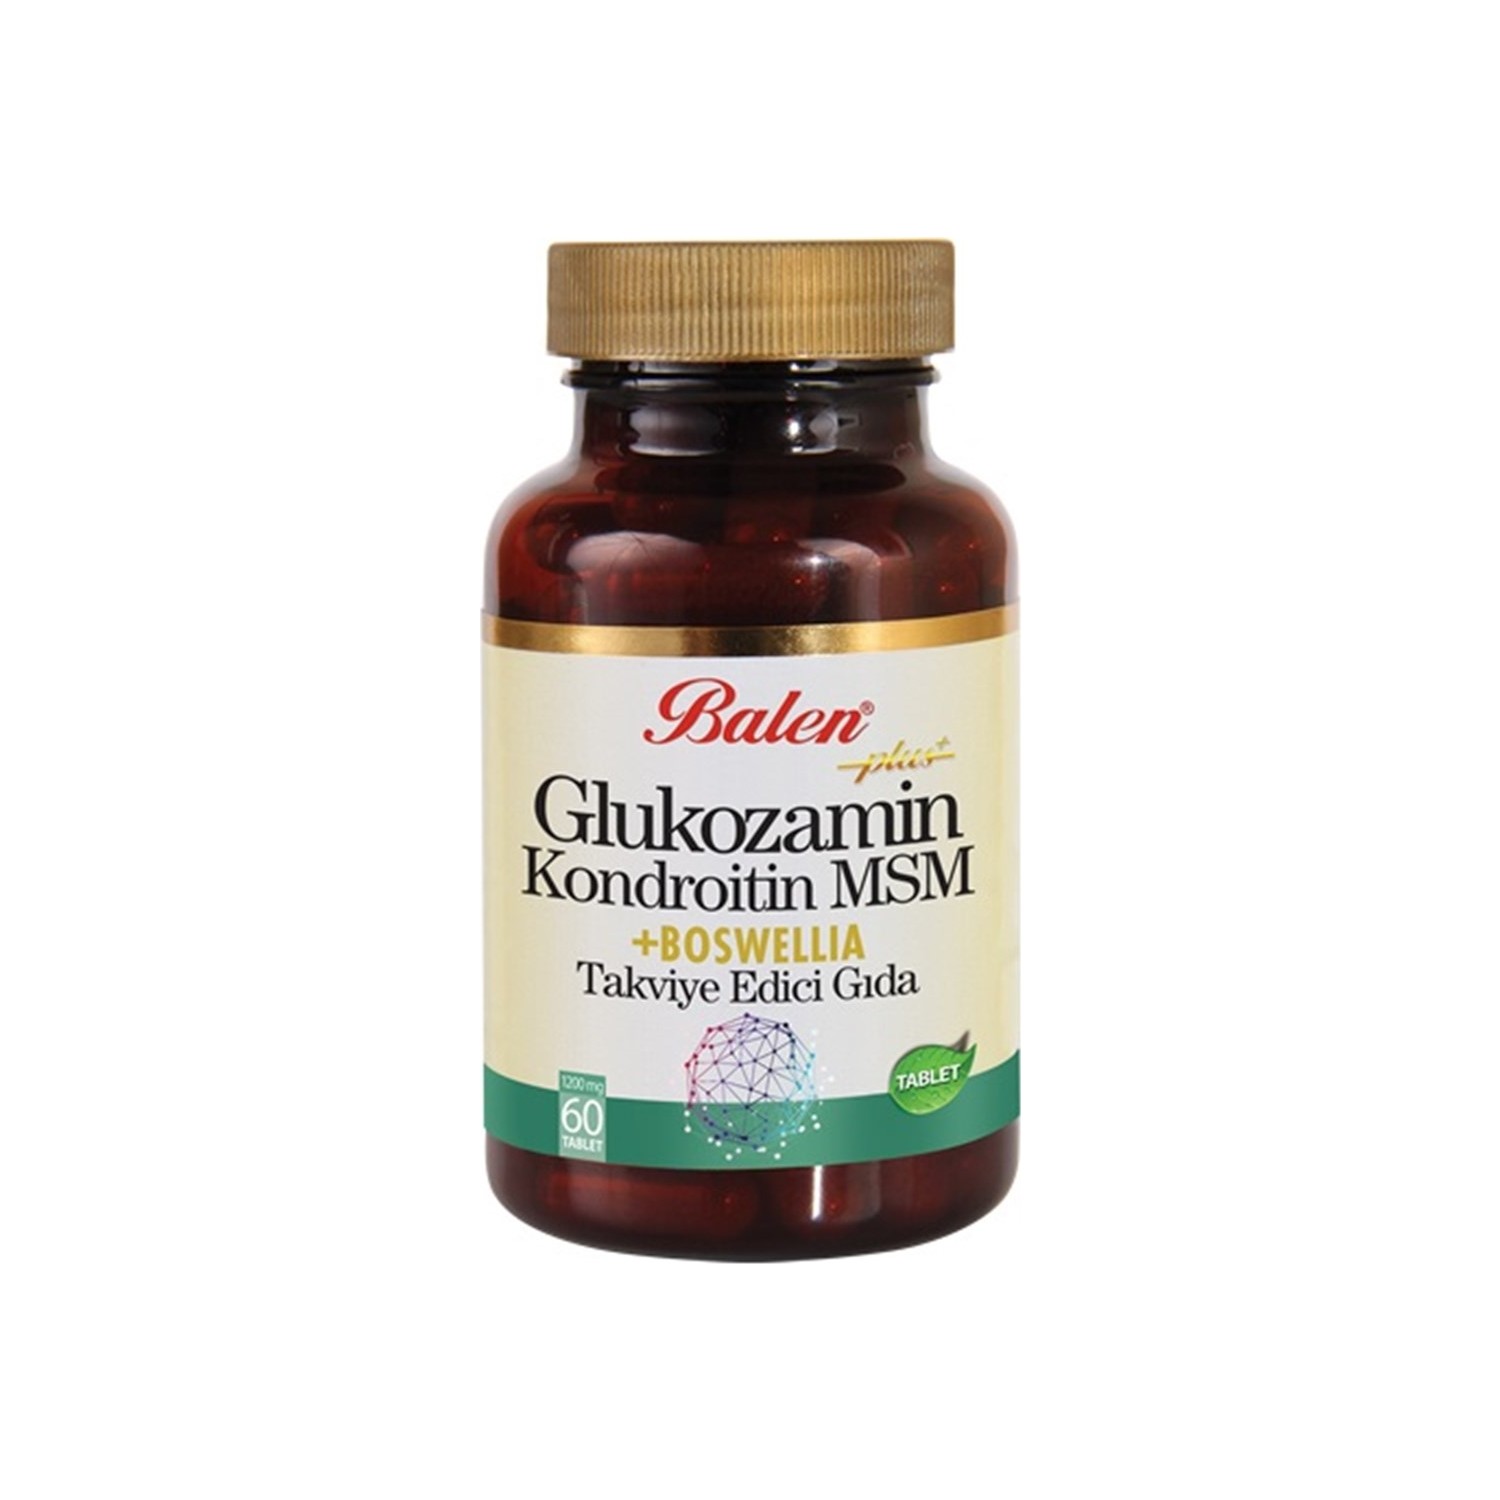 Активная добавка глюкозамин Balen Chondroitin Msm и Boswellia, 60 капсул, 1200 мг